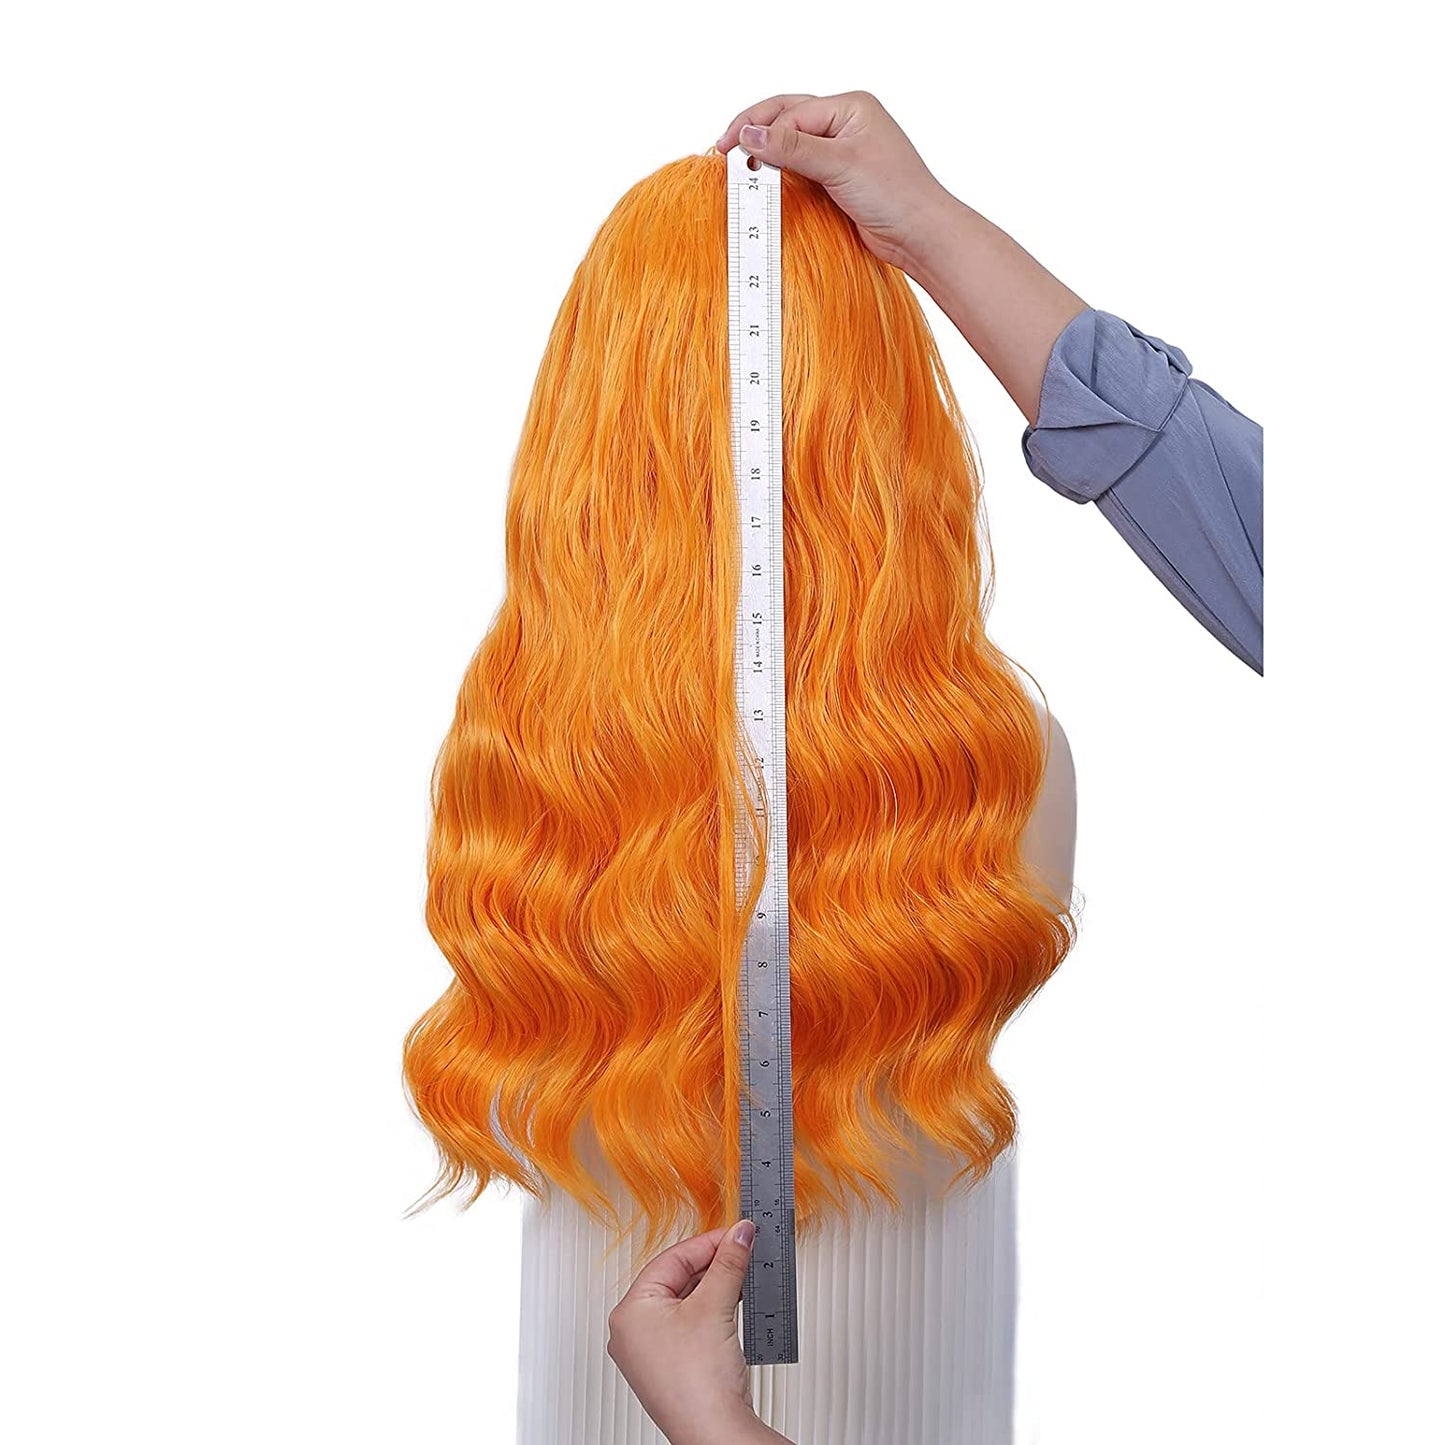  Orange Headband Wig Deep Wave HeadBand Wig Long wavy Wigs Long Curly Wavy Hair Wigs 